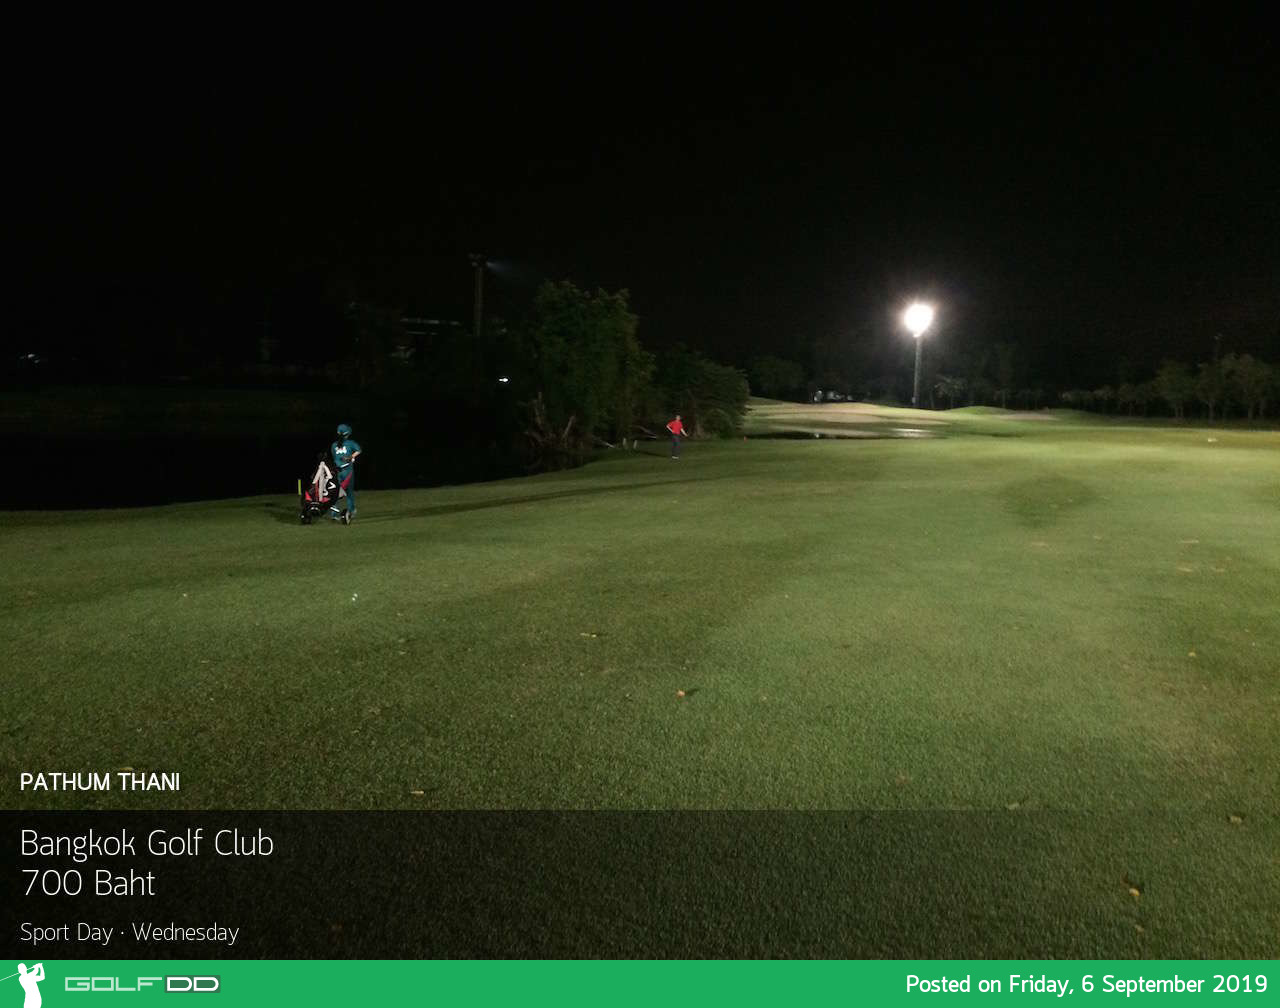 โปรดี จัดหนัก ลด 49% หลังบ่ายสาม ที่ Bangkok Golf Club จองผ่าน Golfdd จ่ายหน้าสนามได้เลย 